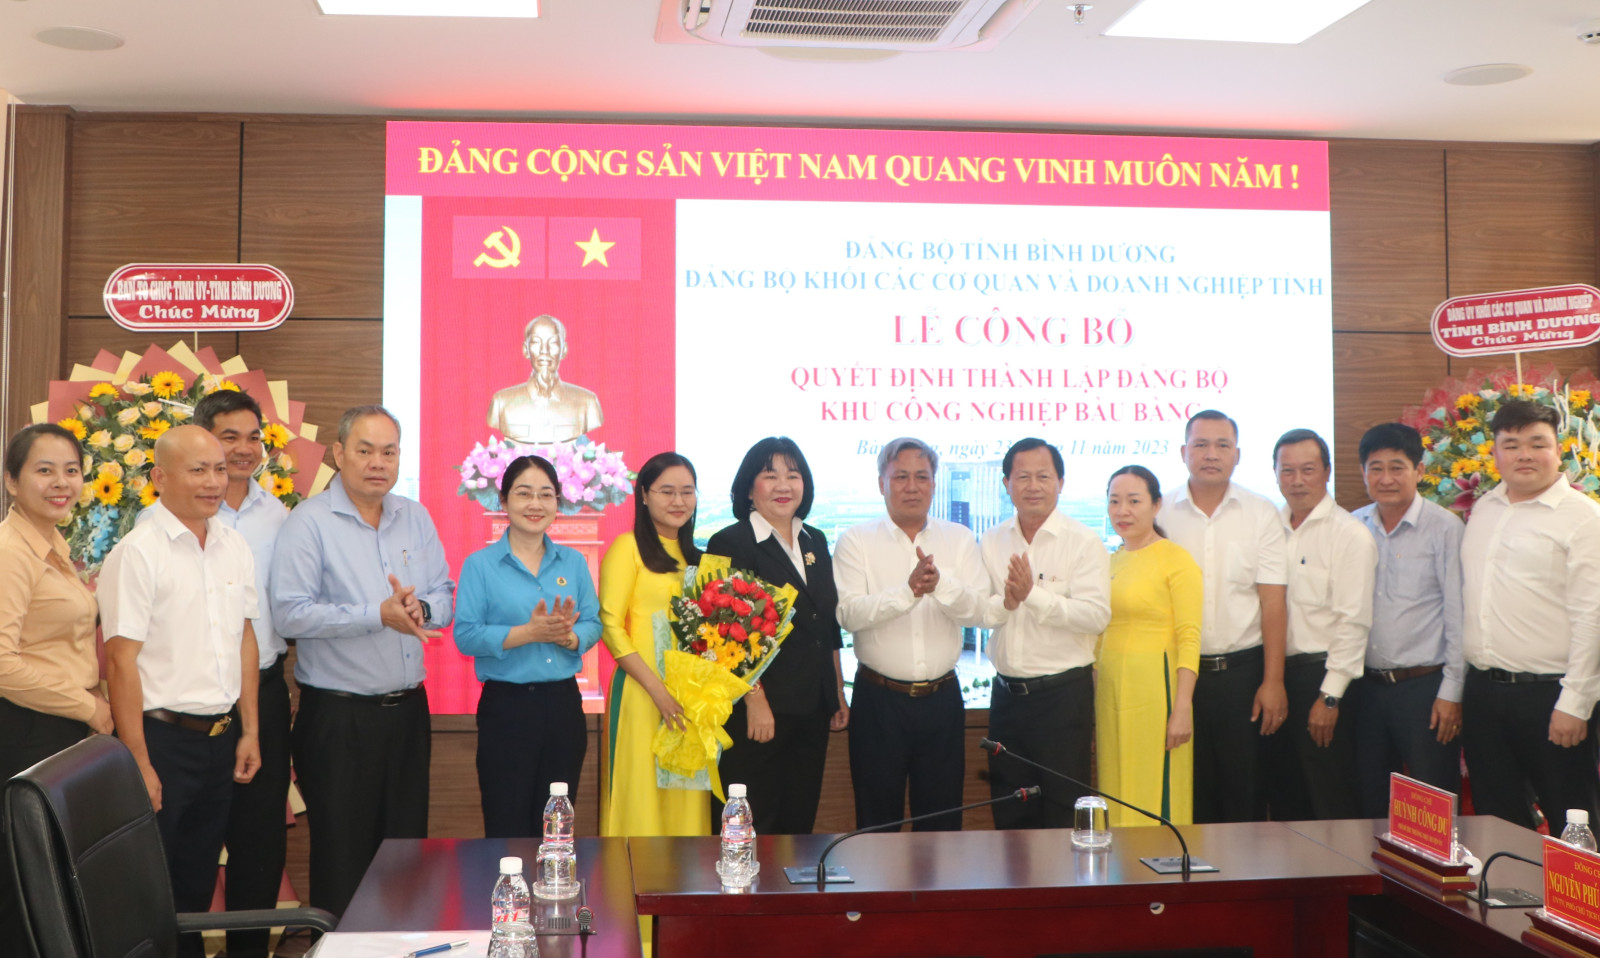 Các đại biểu chúc mừng Đảng bộ cơ sở KCN Bàu Bàng.